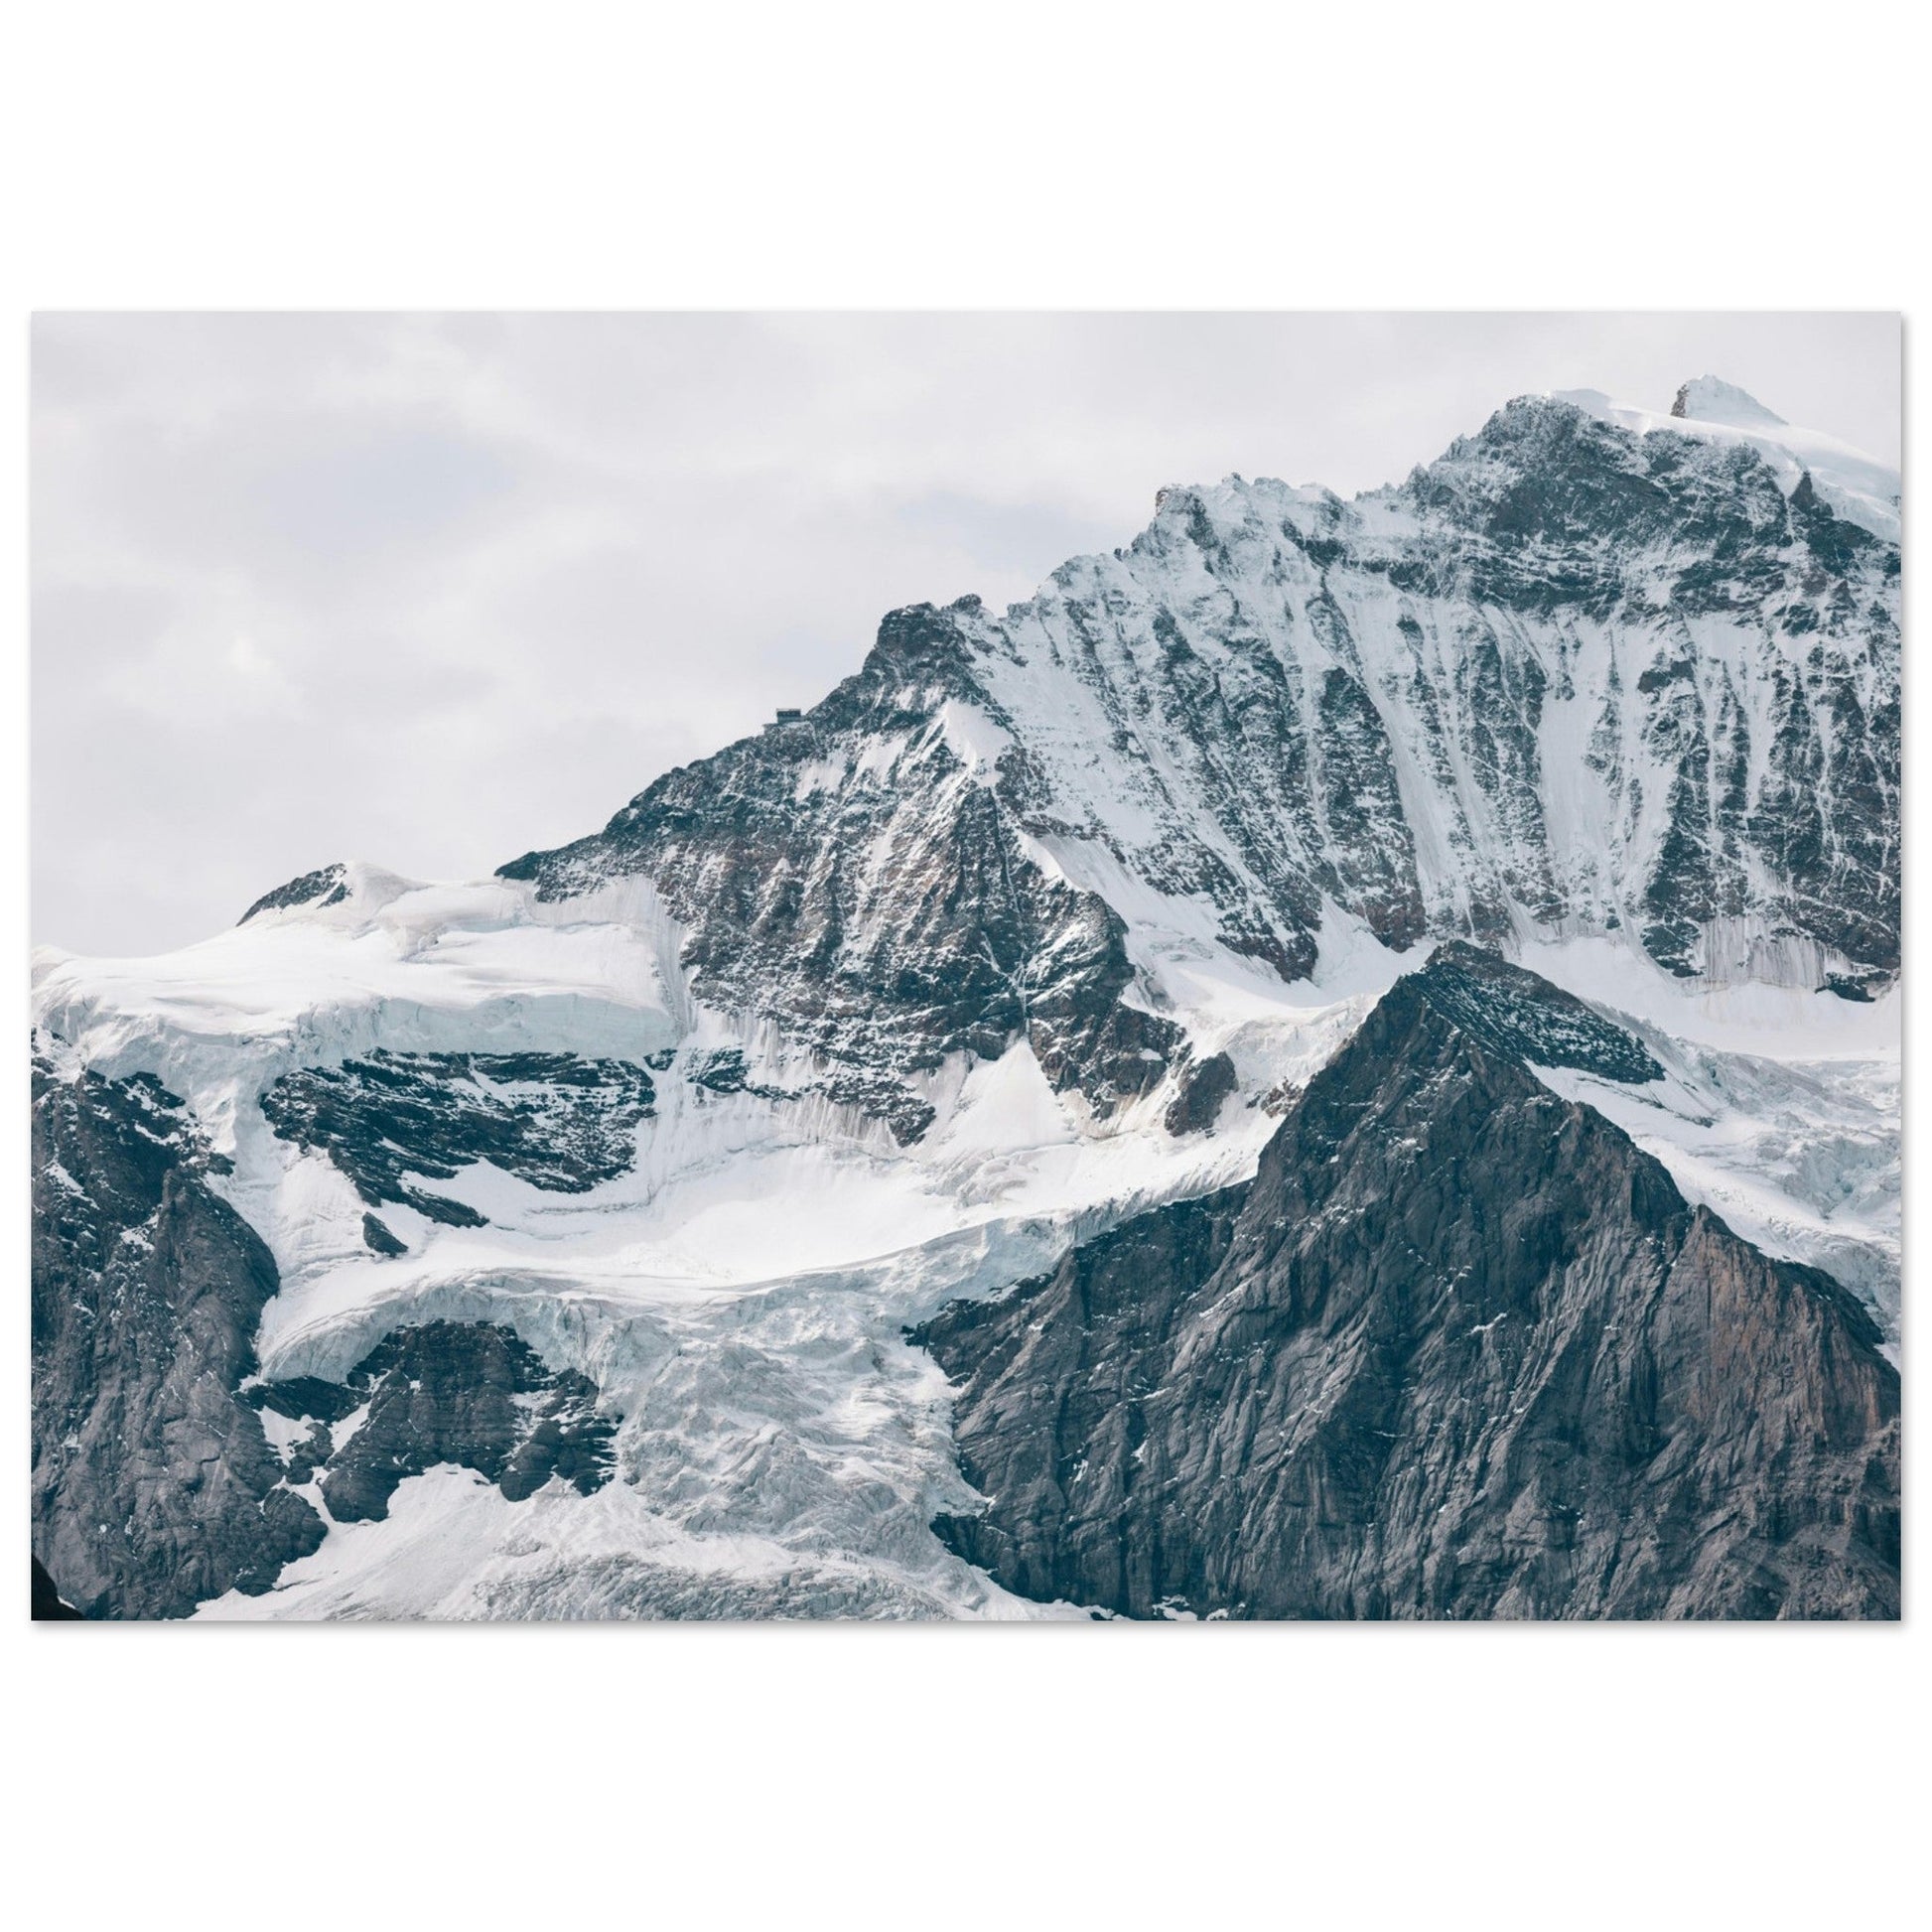 Vente Photo du glacier de l’Eiger, Wengen, Lauterbrunnen, Suisse - Tableau photo paysage